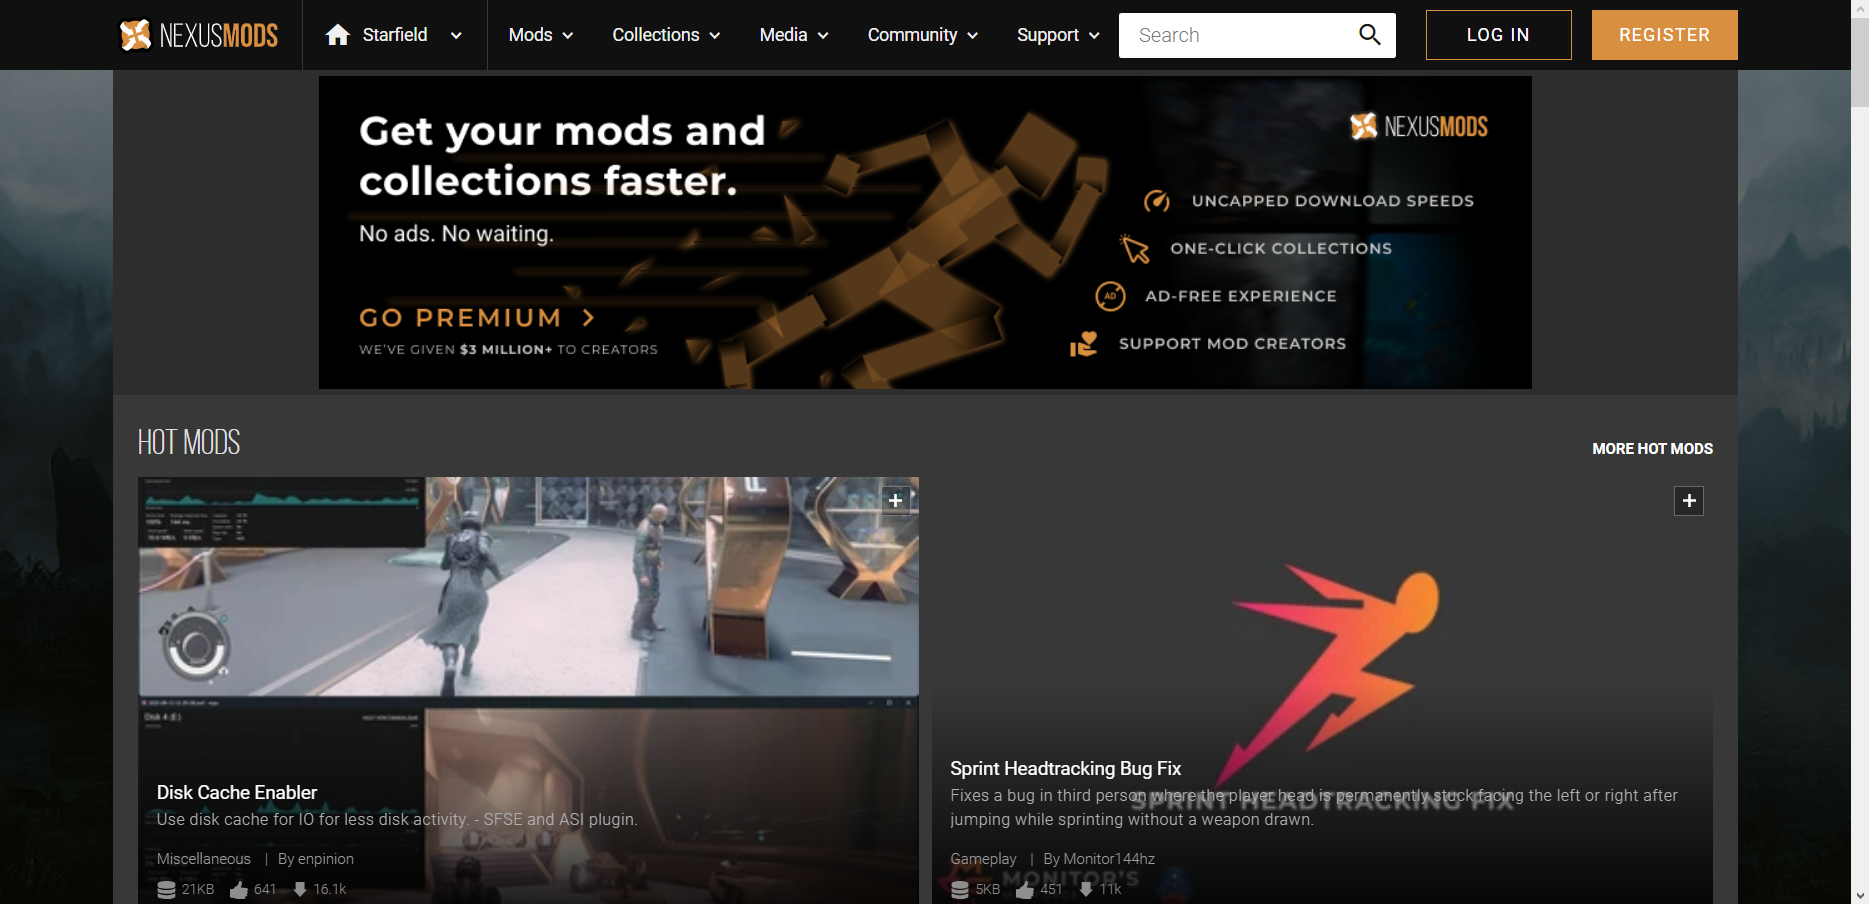 Captura de tela do hub de Starfield no portal Nexus Mods